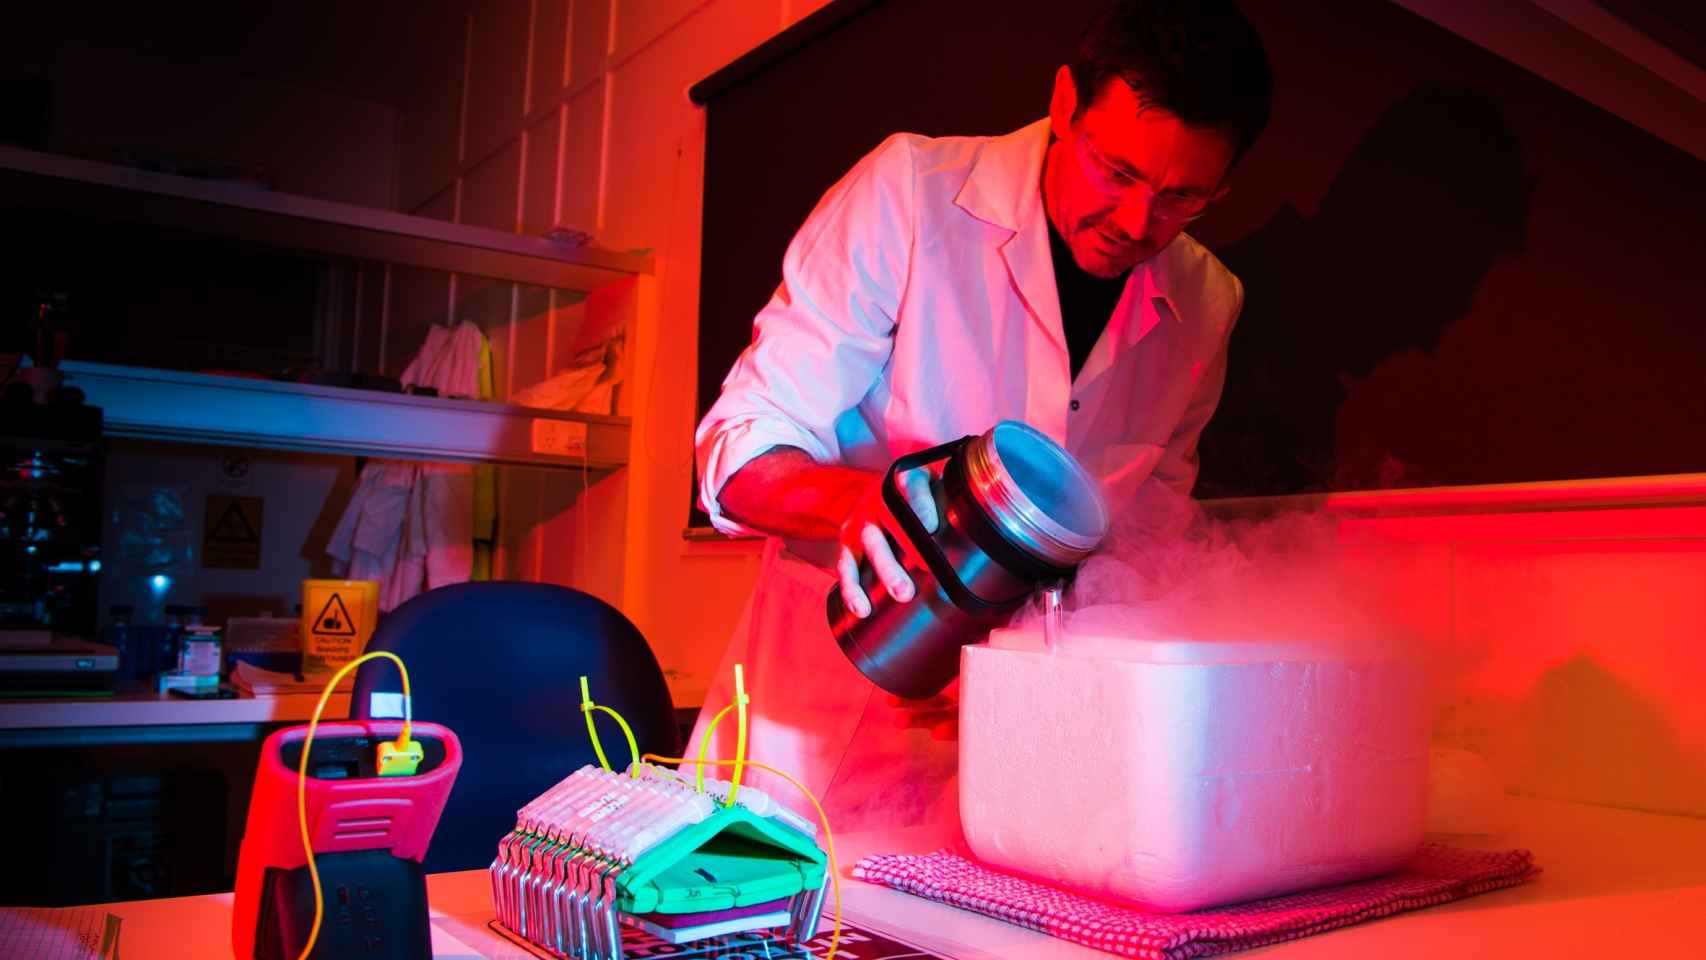 Jonathan Daly, coordinador del estudio, emplea una técnica de criogenización